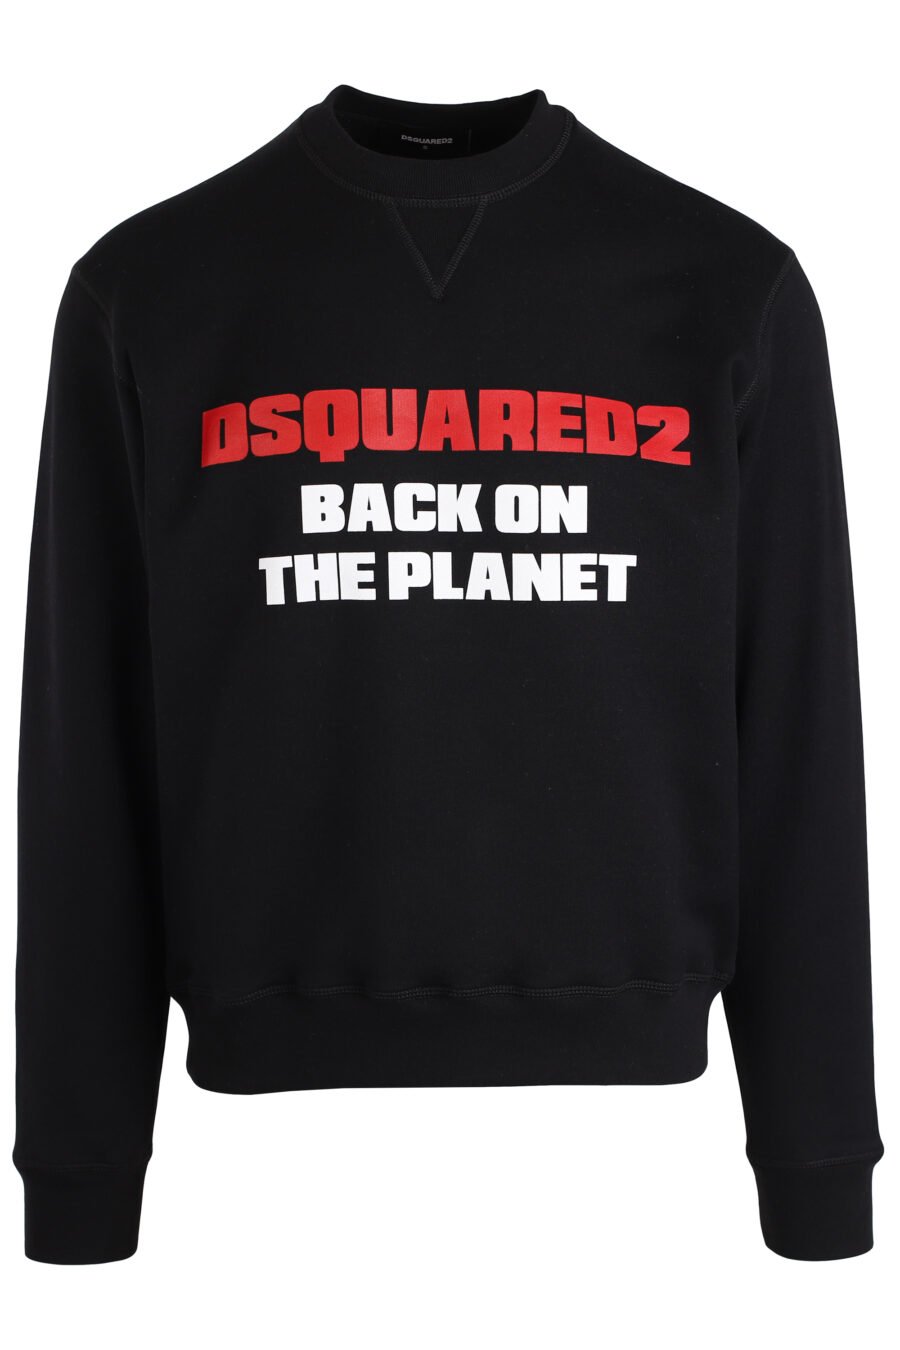 Schwarzes Sweatshirt "Zurück auf dem Planeten" - IMG 3969